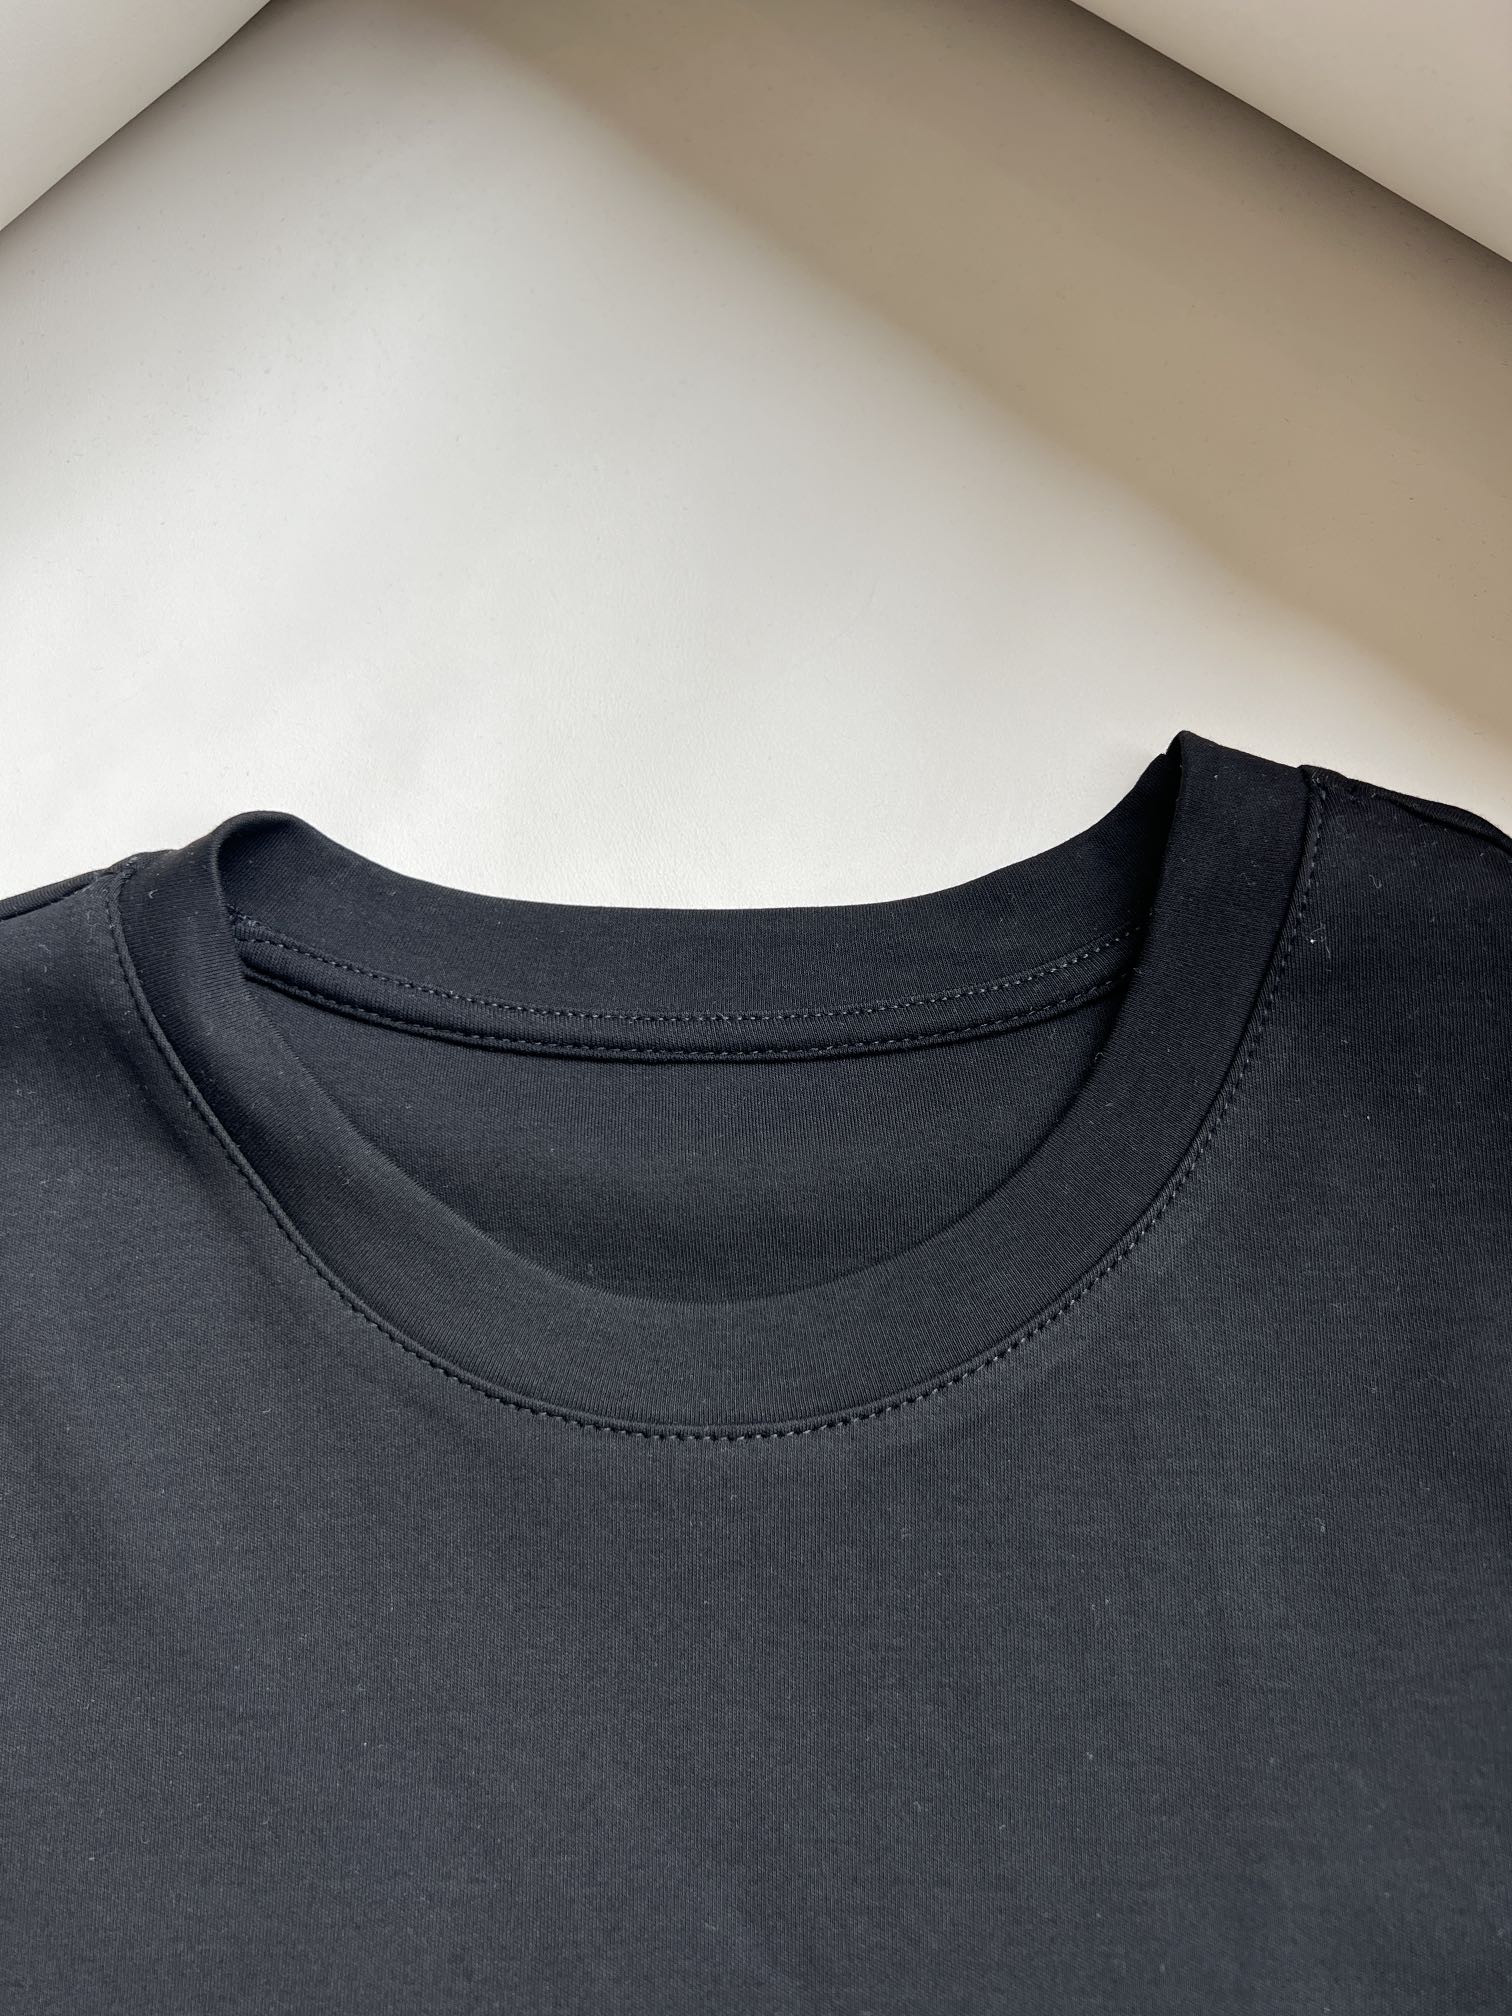 JIL新款基础款极简主义设计的追随者节险美学+简洁线条针织棉面料完美质感四色sml